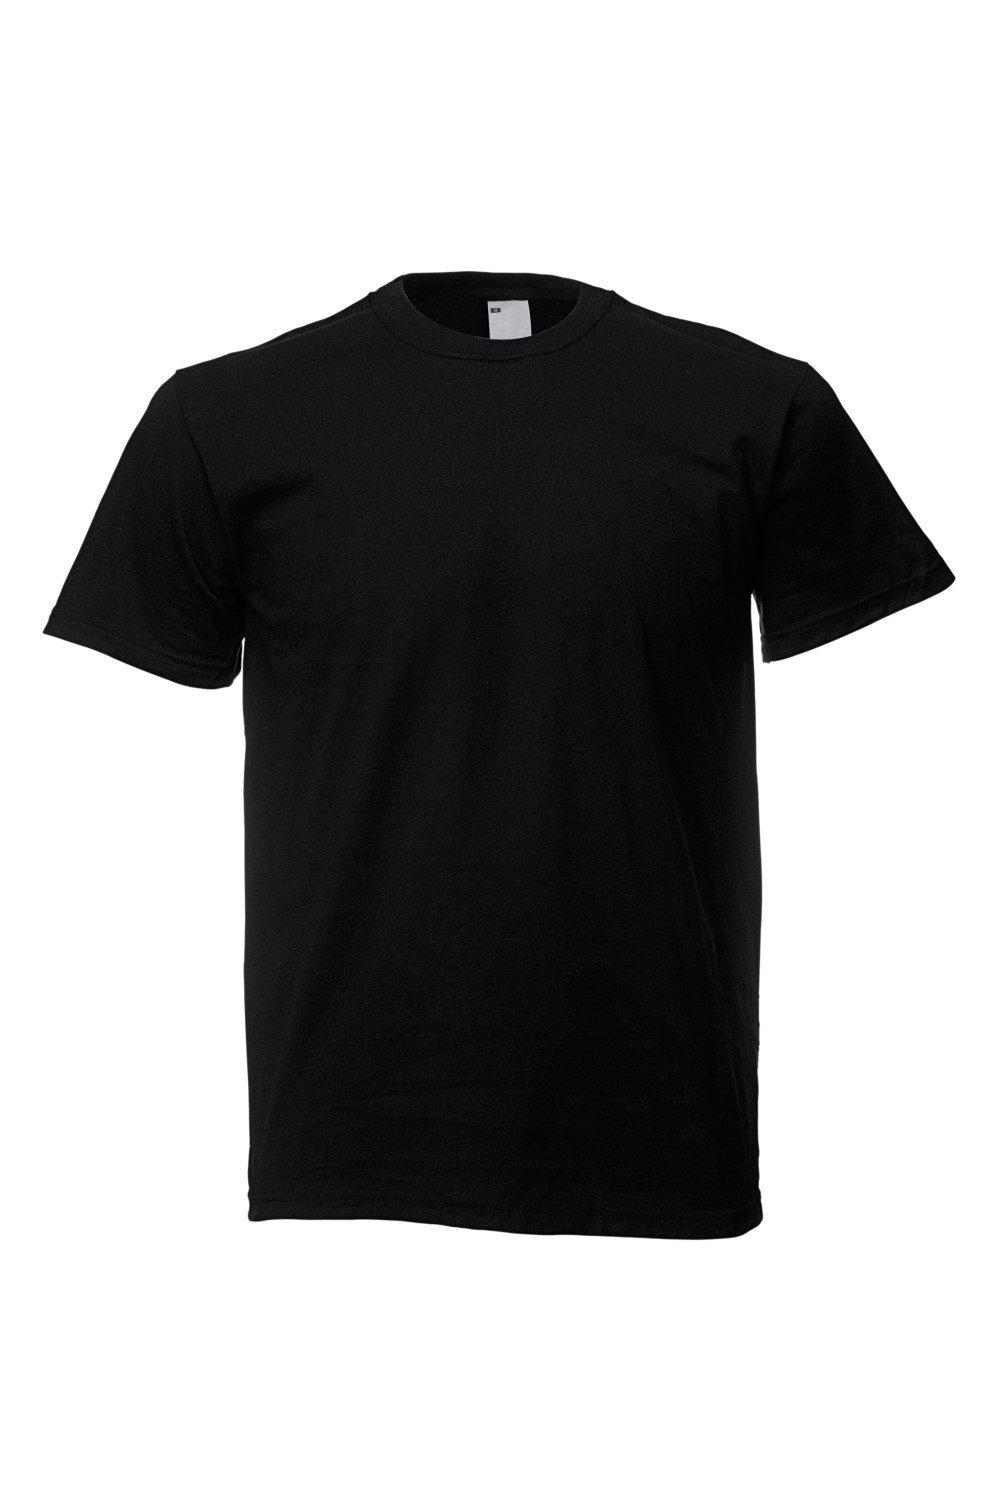 Повседневная футболка с коротким рукавом Universal Textiles, черный мужская футболка йога 2xl серый меланж